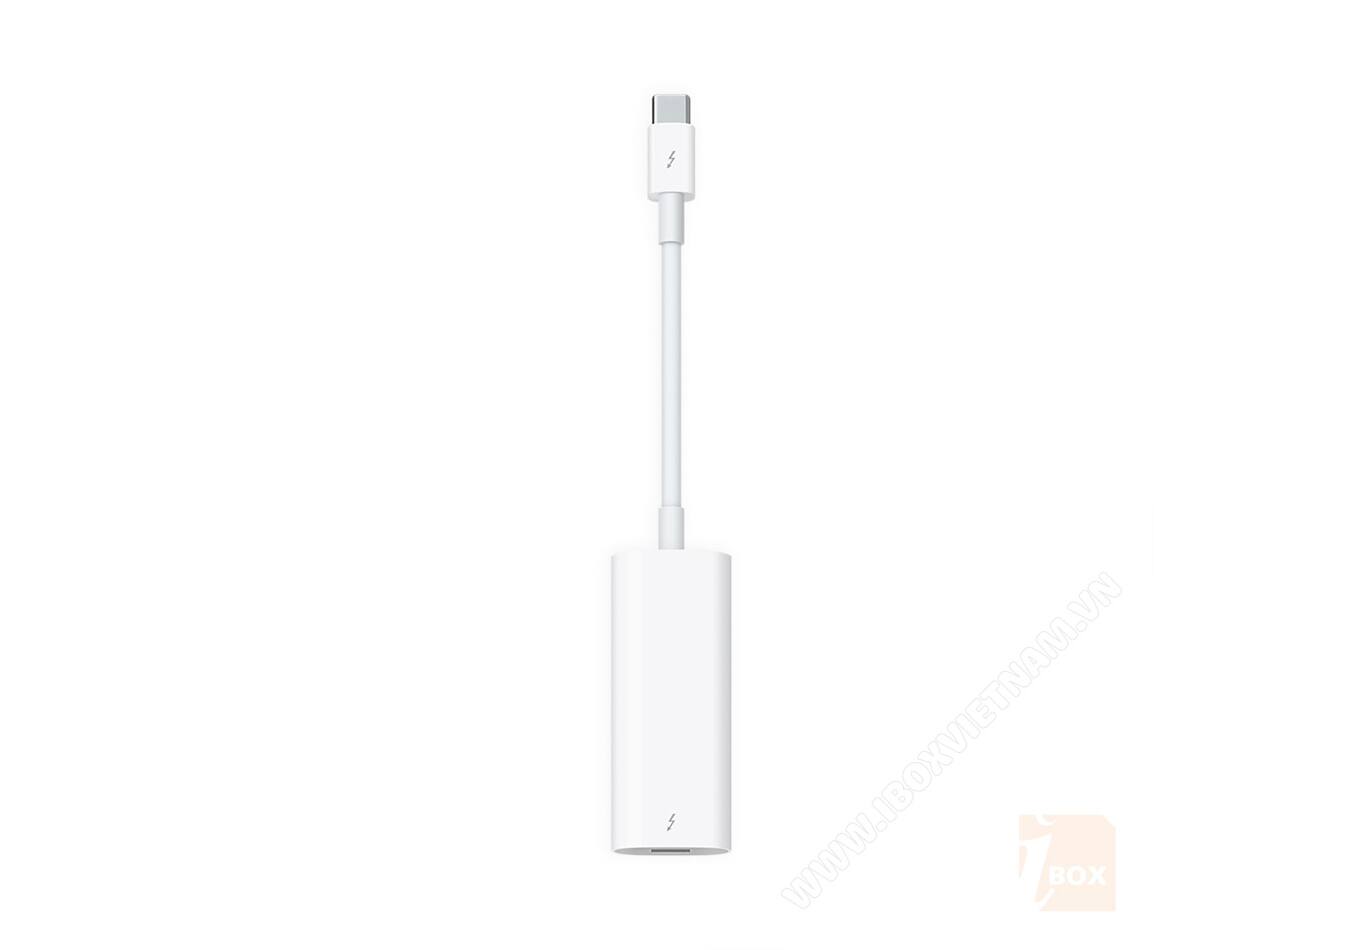 Cáp chuyển đổi Apple Thunderbolt 3 (USB-C) to Thunderbolt 2 Adapter giá rẻ,  bảo hành chính hãng uy tín số 1 Hải Phòng